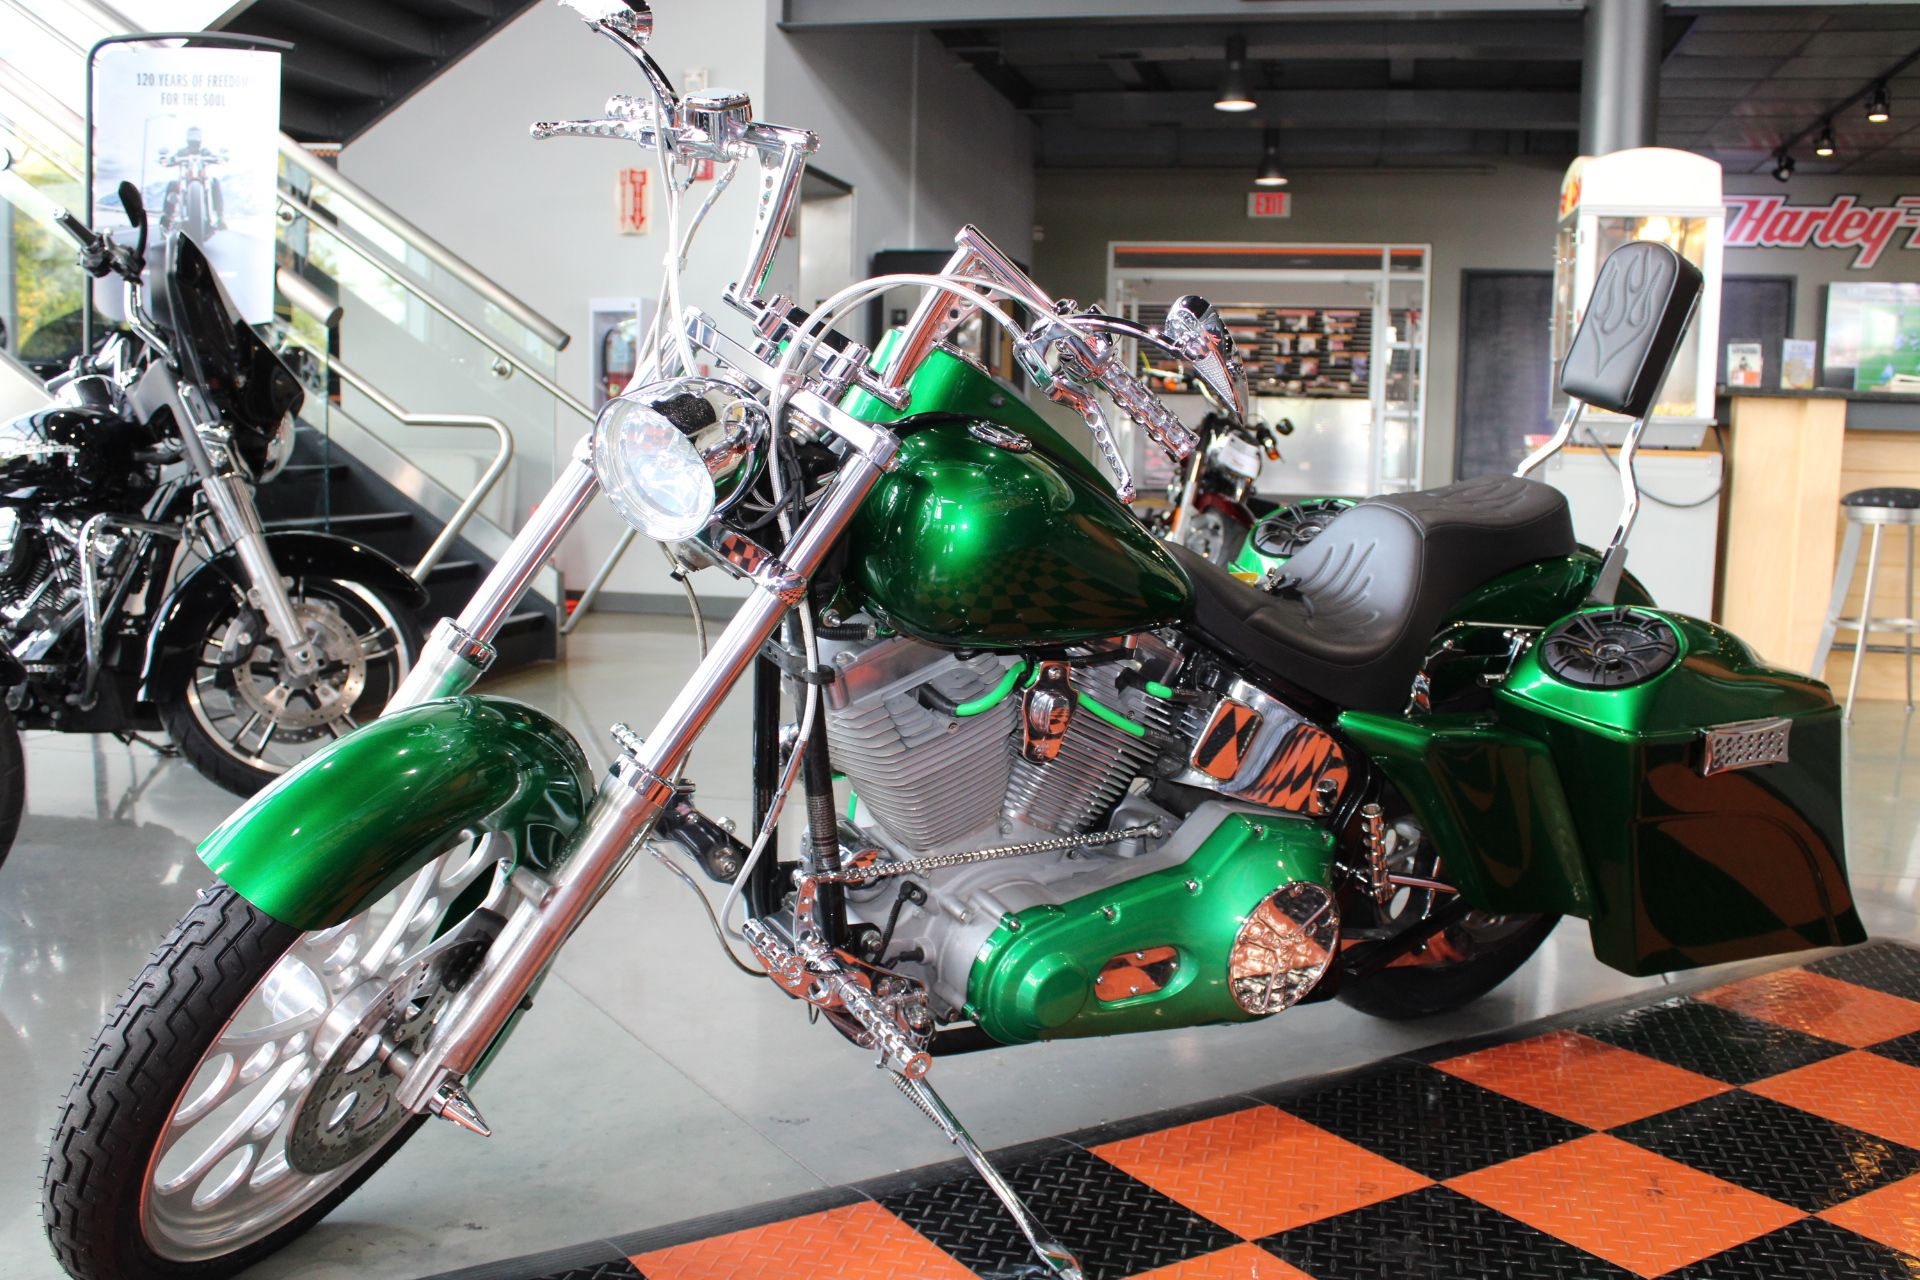 2005 Harley-Davidson FXST/FXSTI Softail® Standard in Shorewood, Illinois - Photo 27